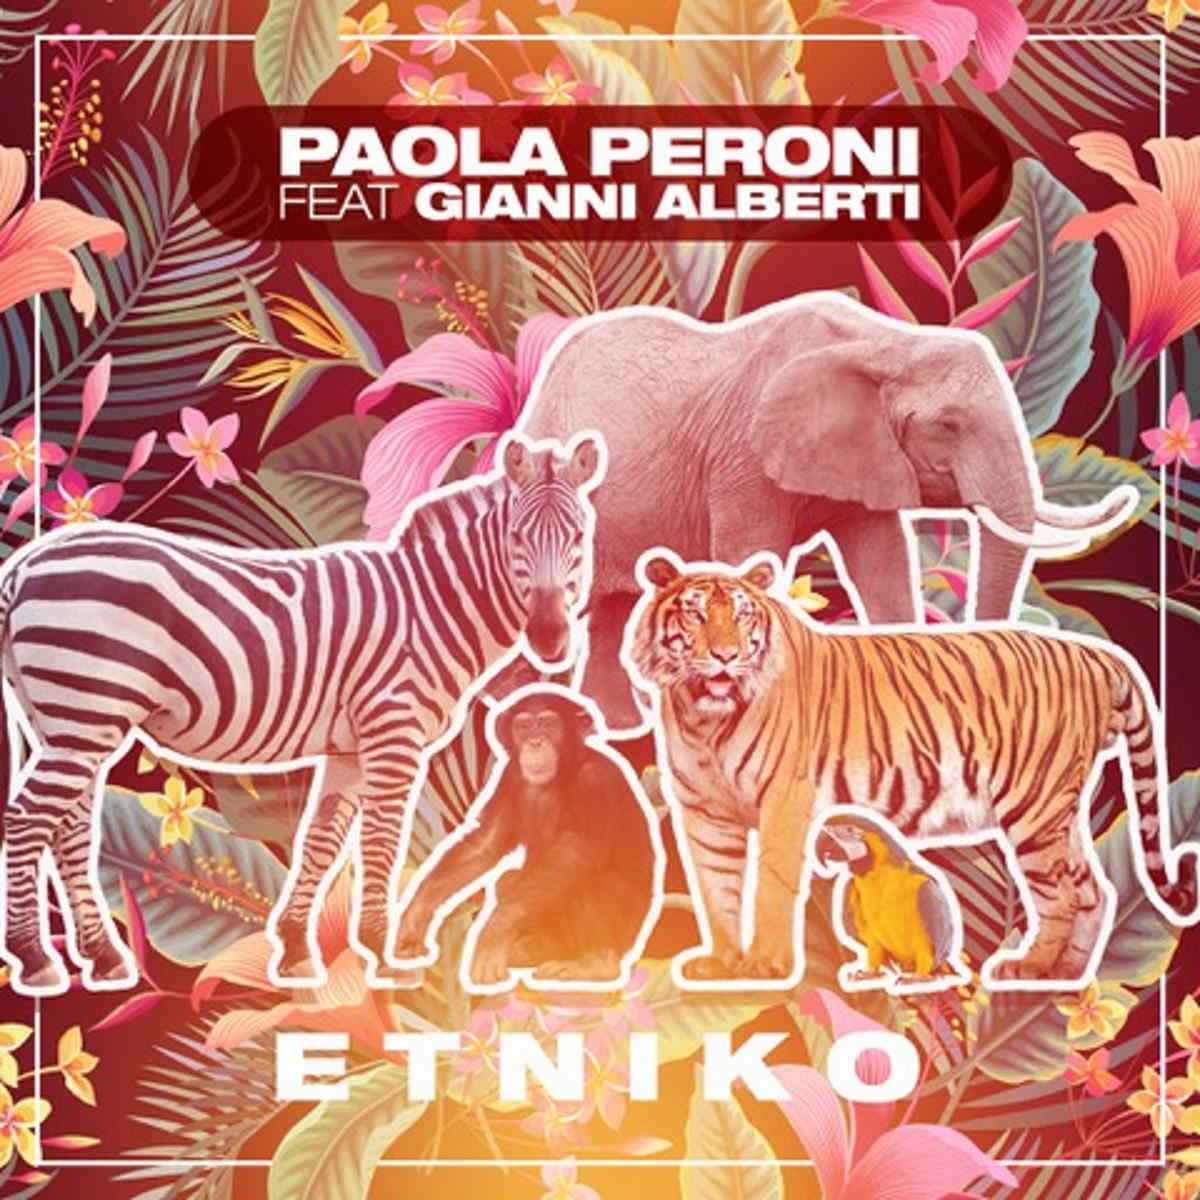 Paola Peroni feat. Gianni Alberti, dal 17 giugno si balla con Etniko!